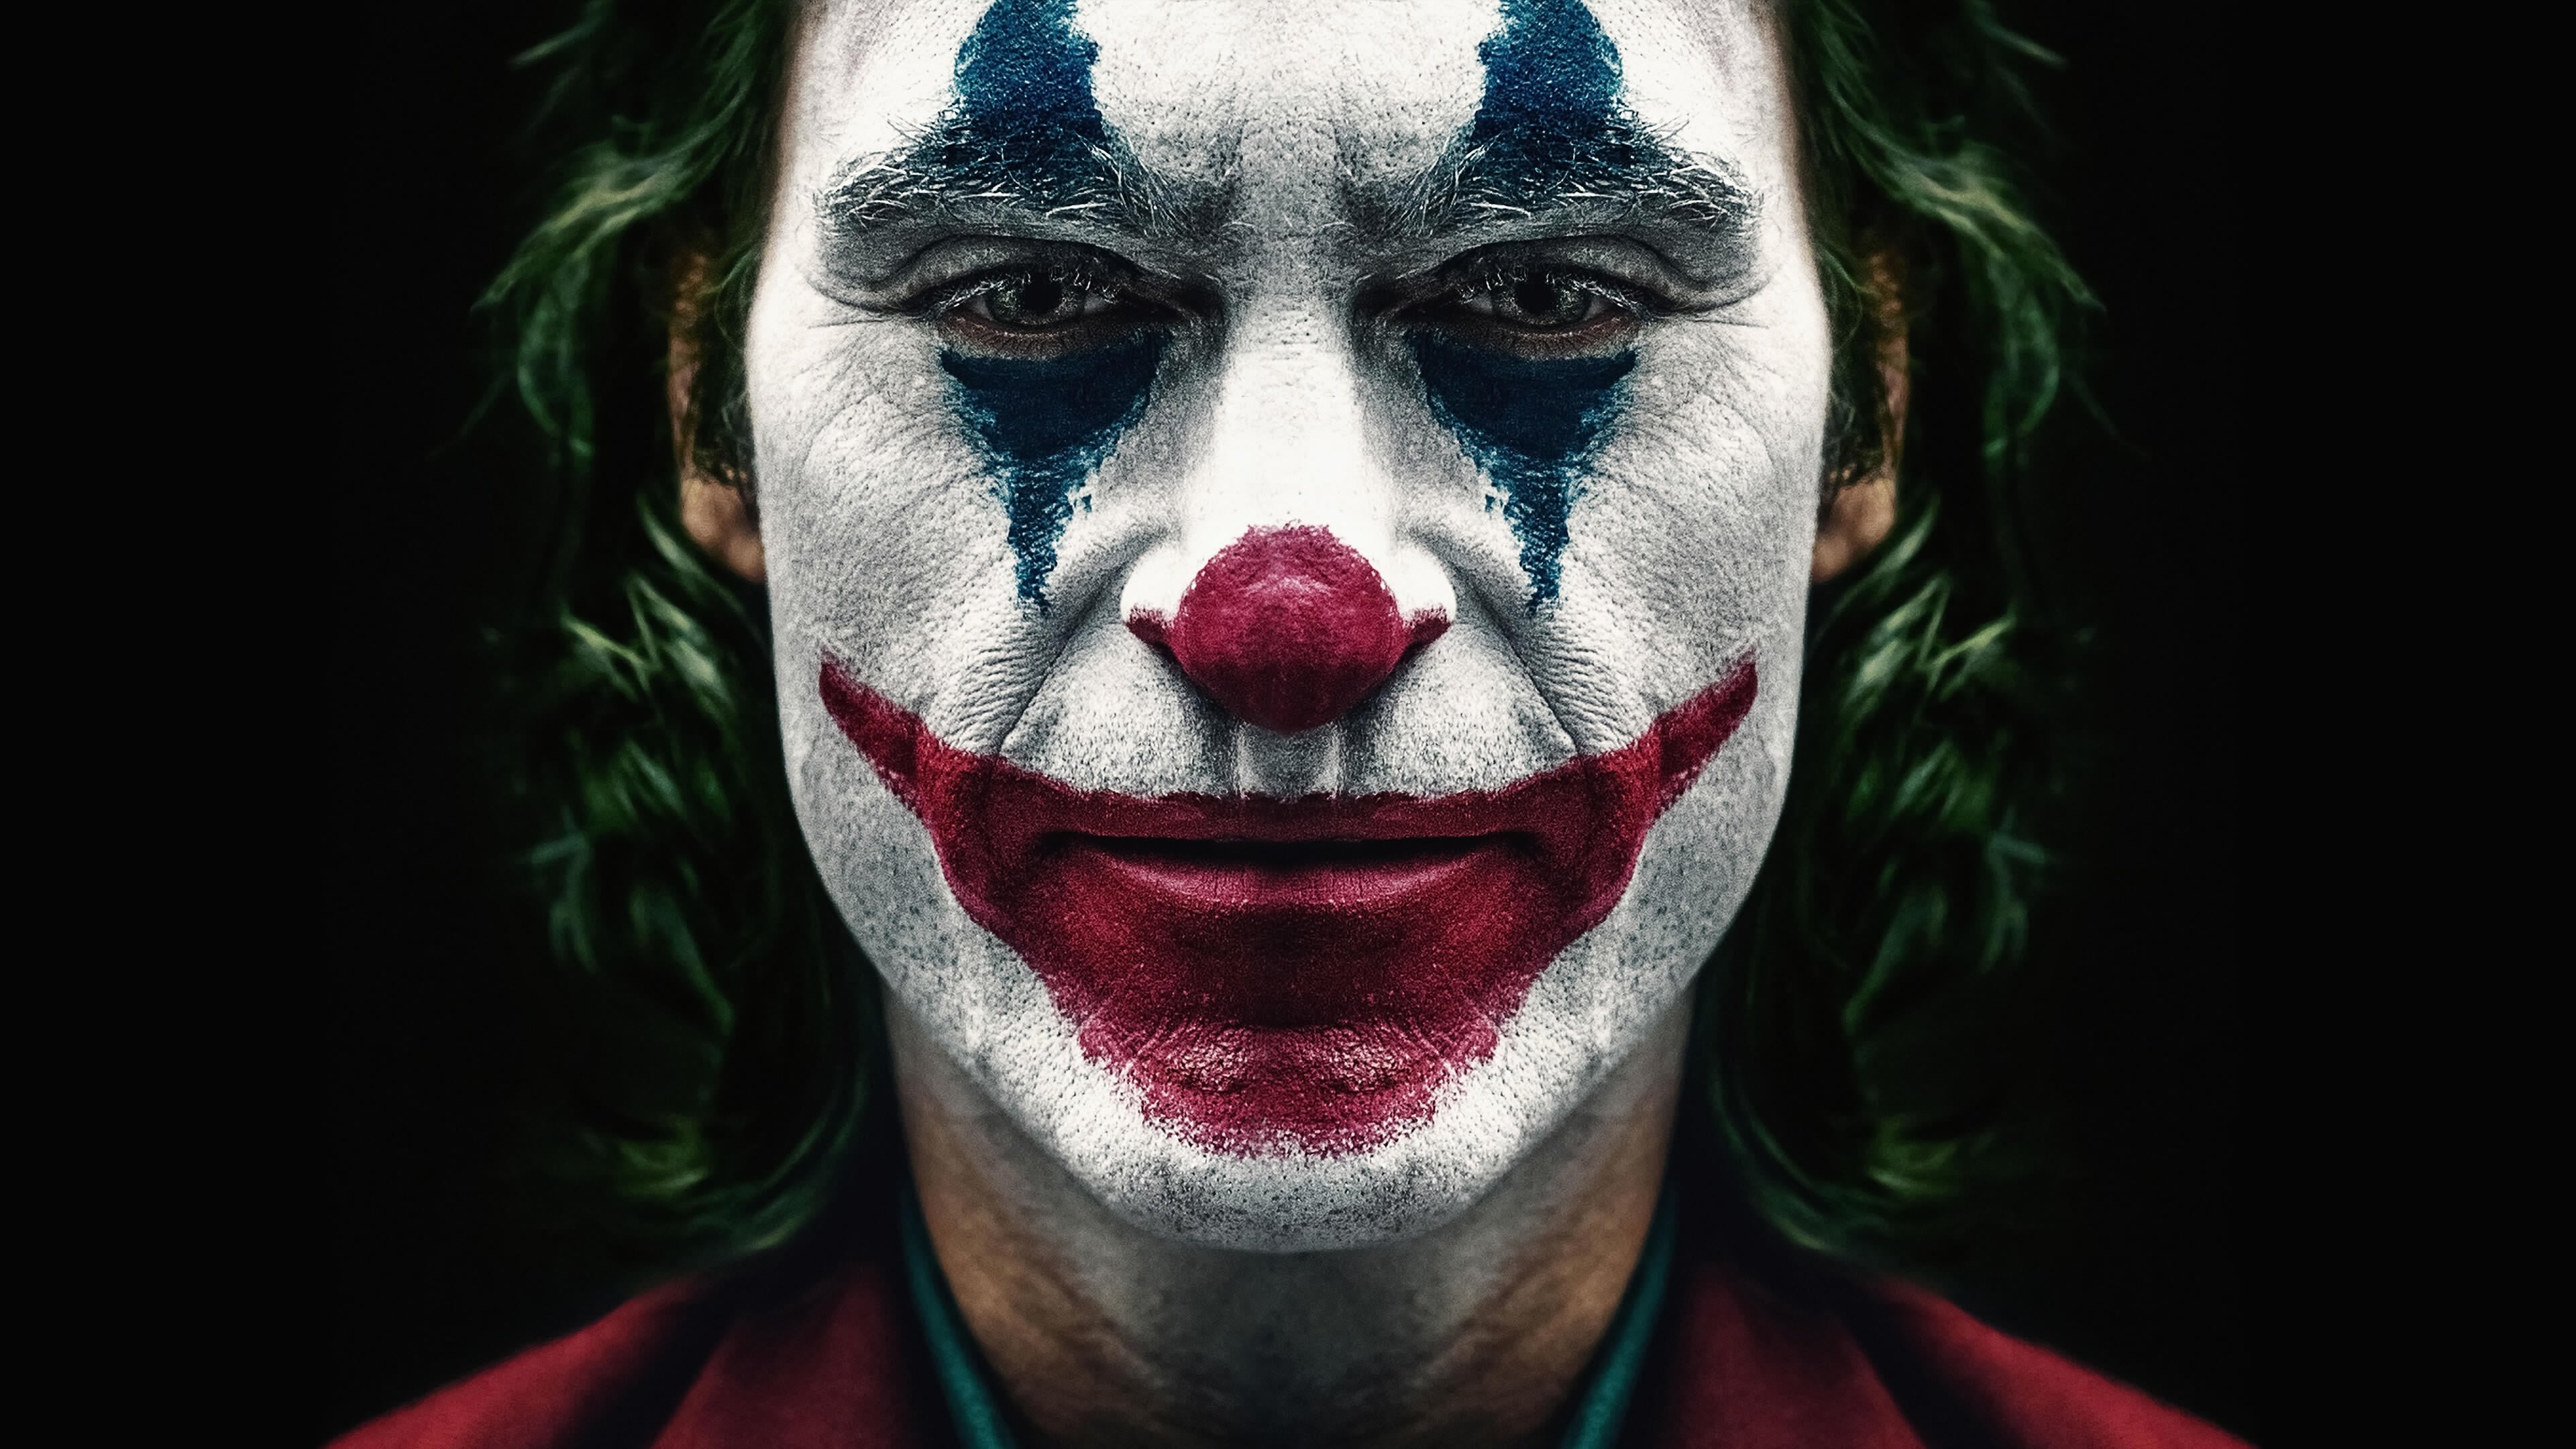 โจ๊กเกอร์ Joker ออนไลน์โดยสมบูรณ์ในปี 2019